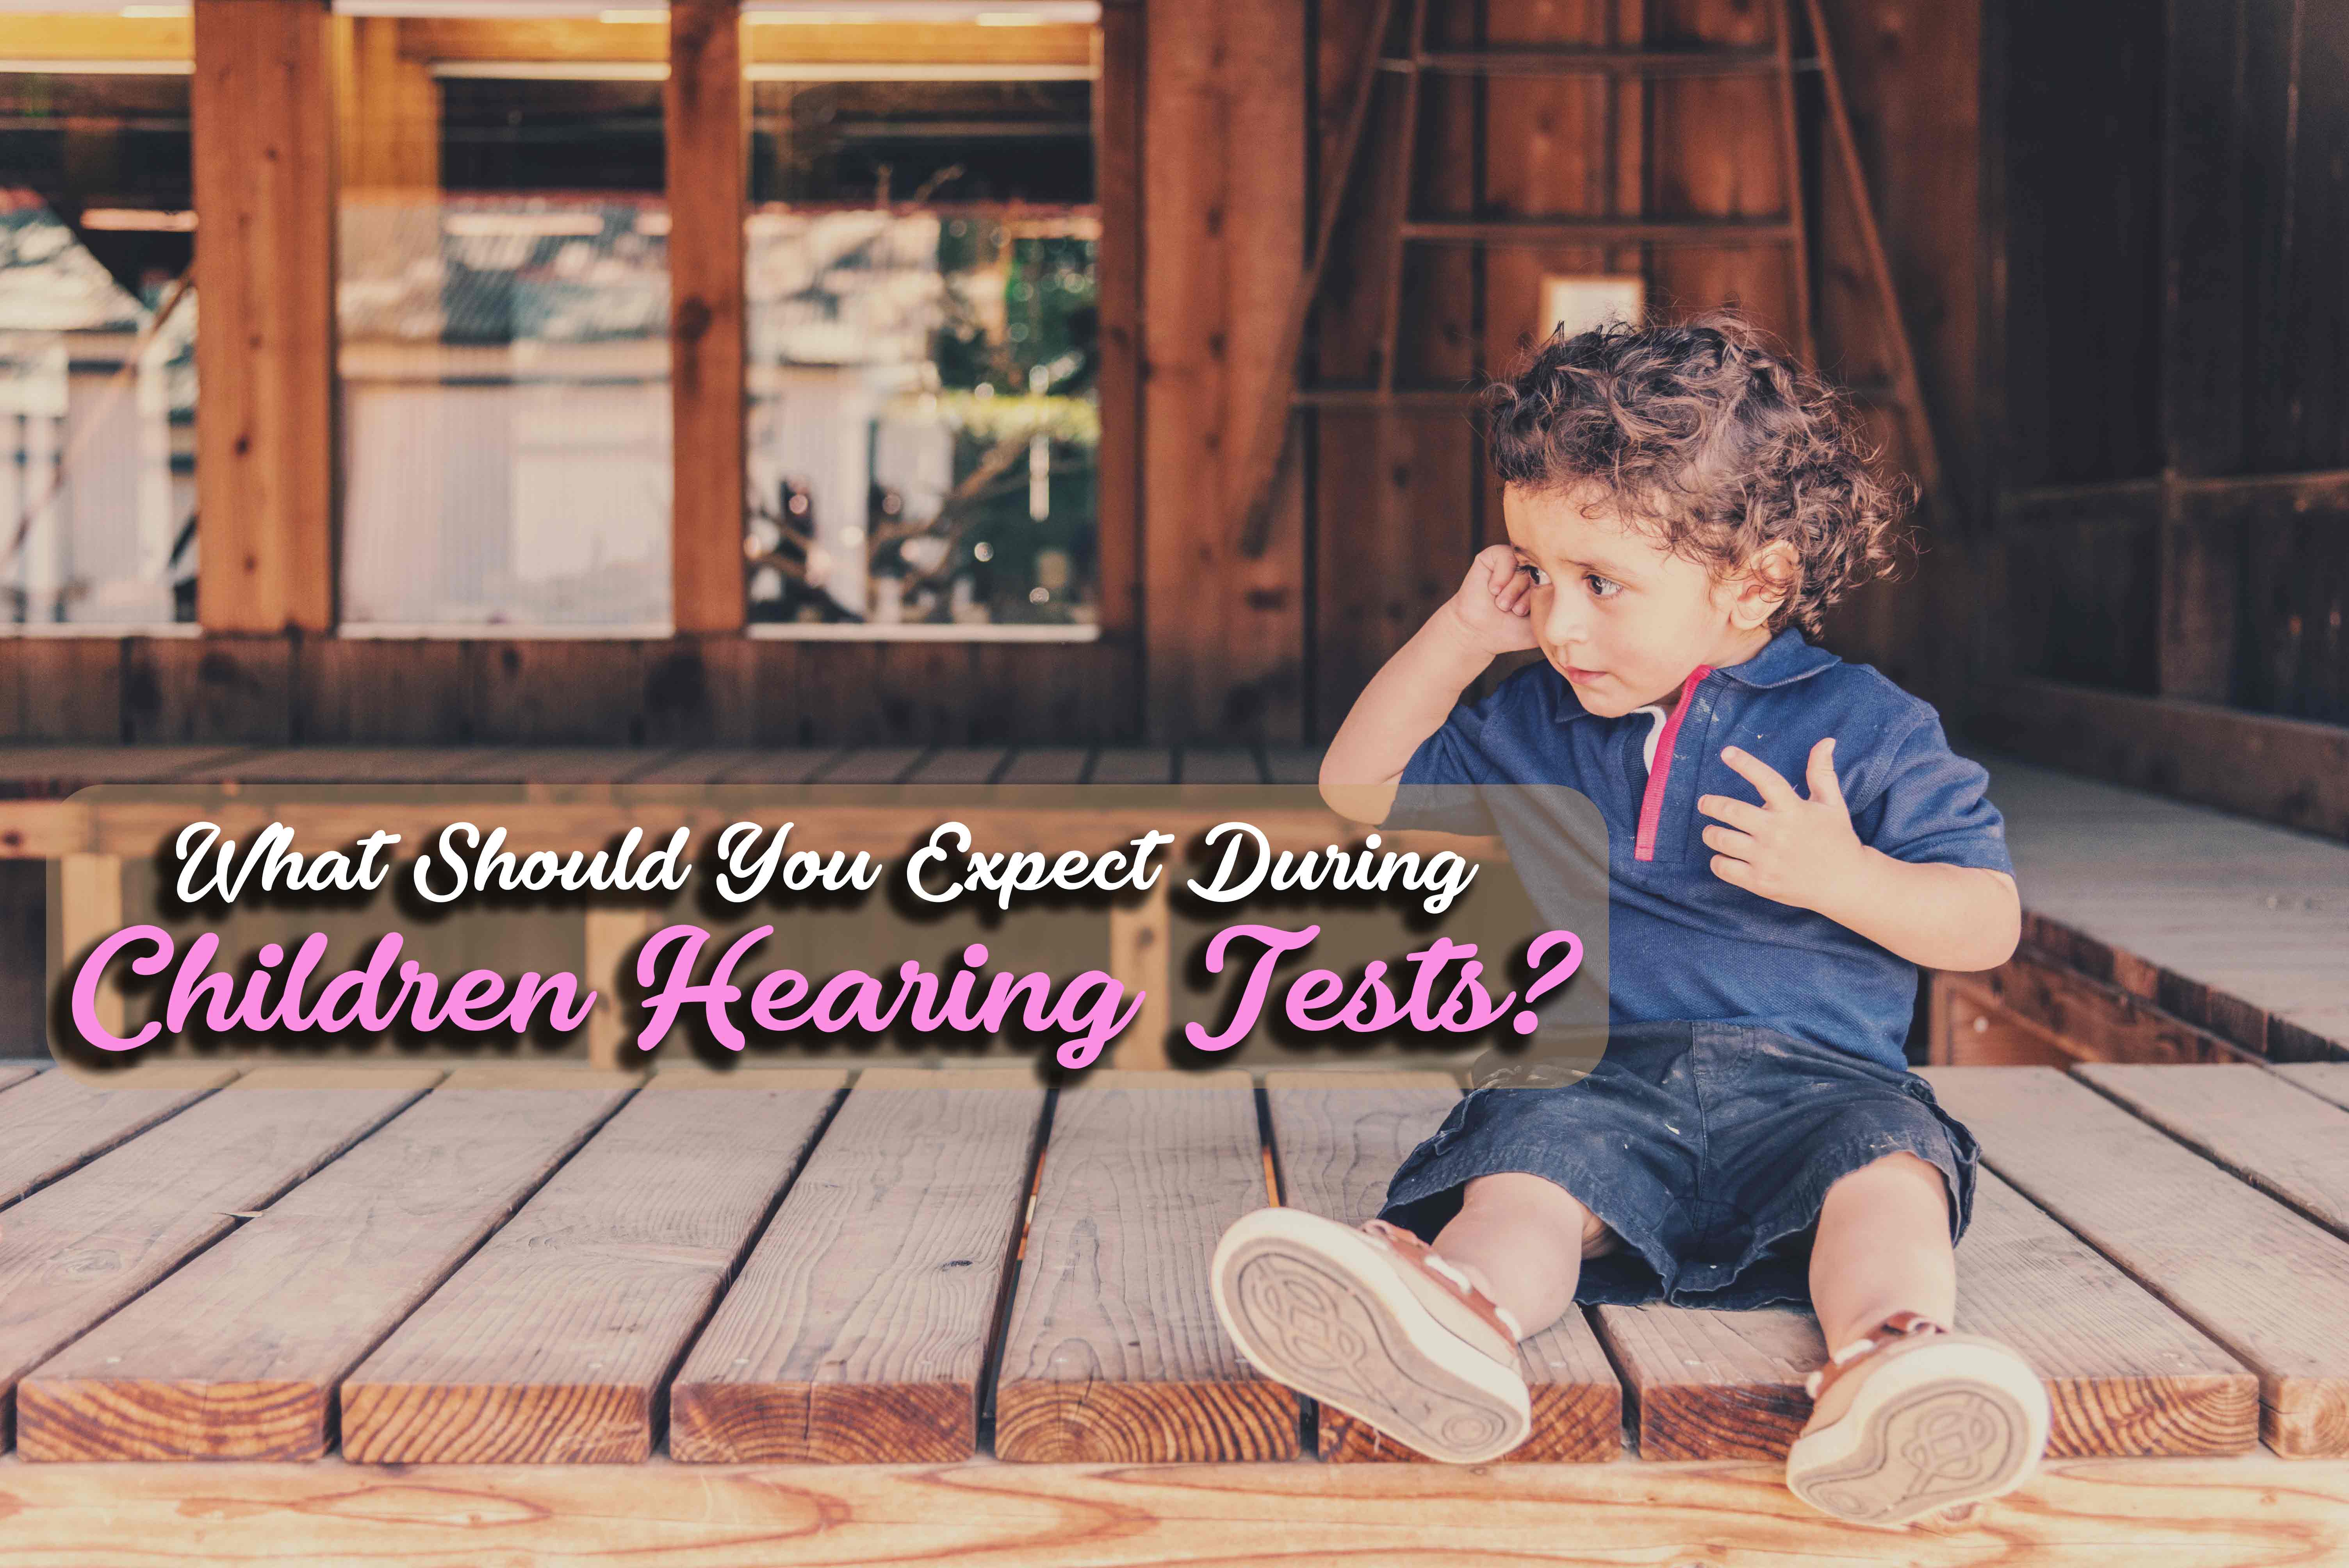 children hearing tests